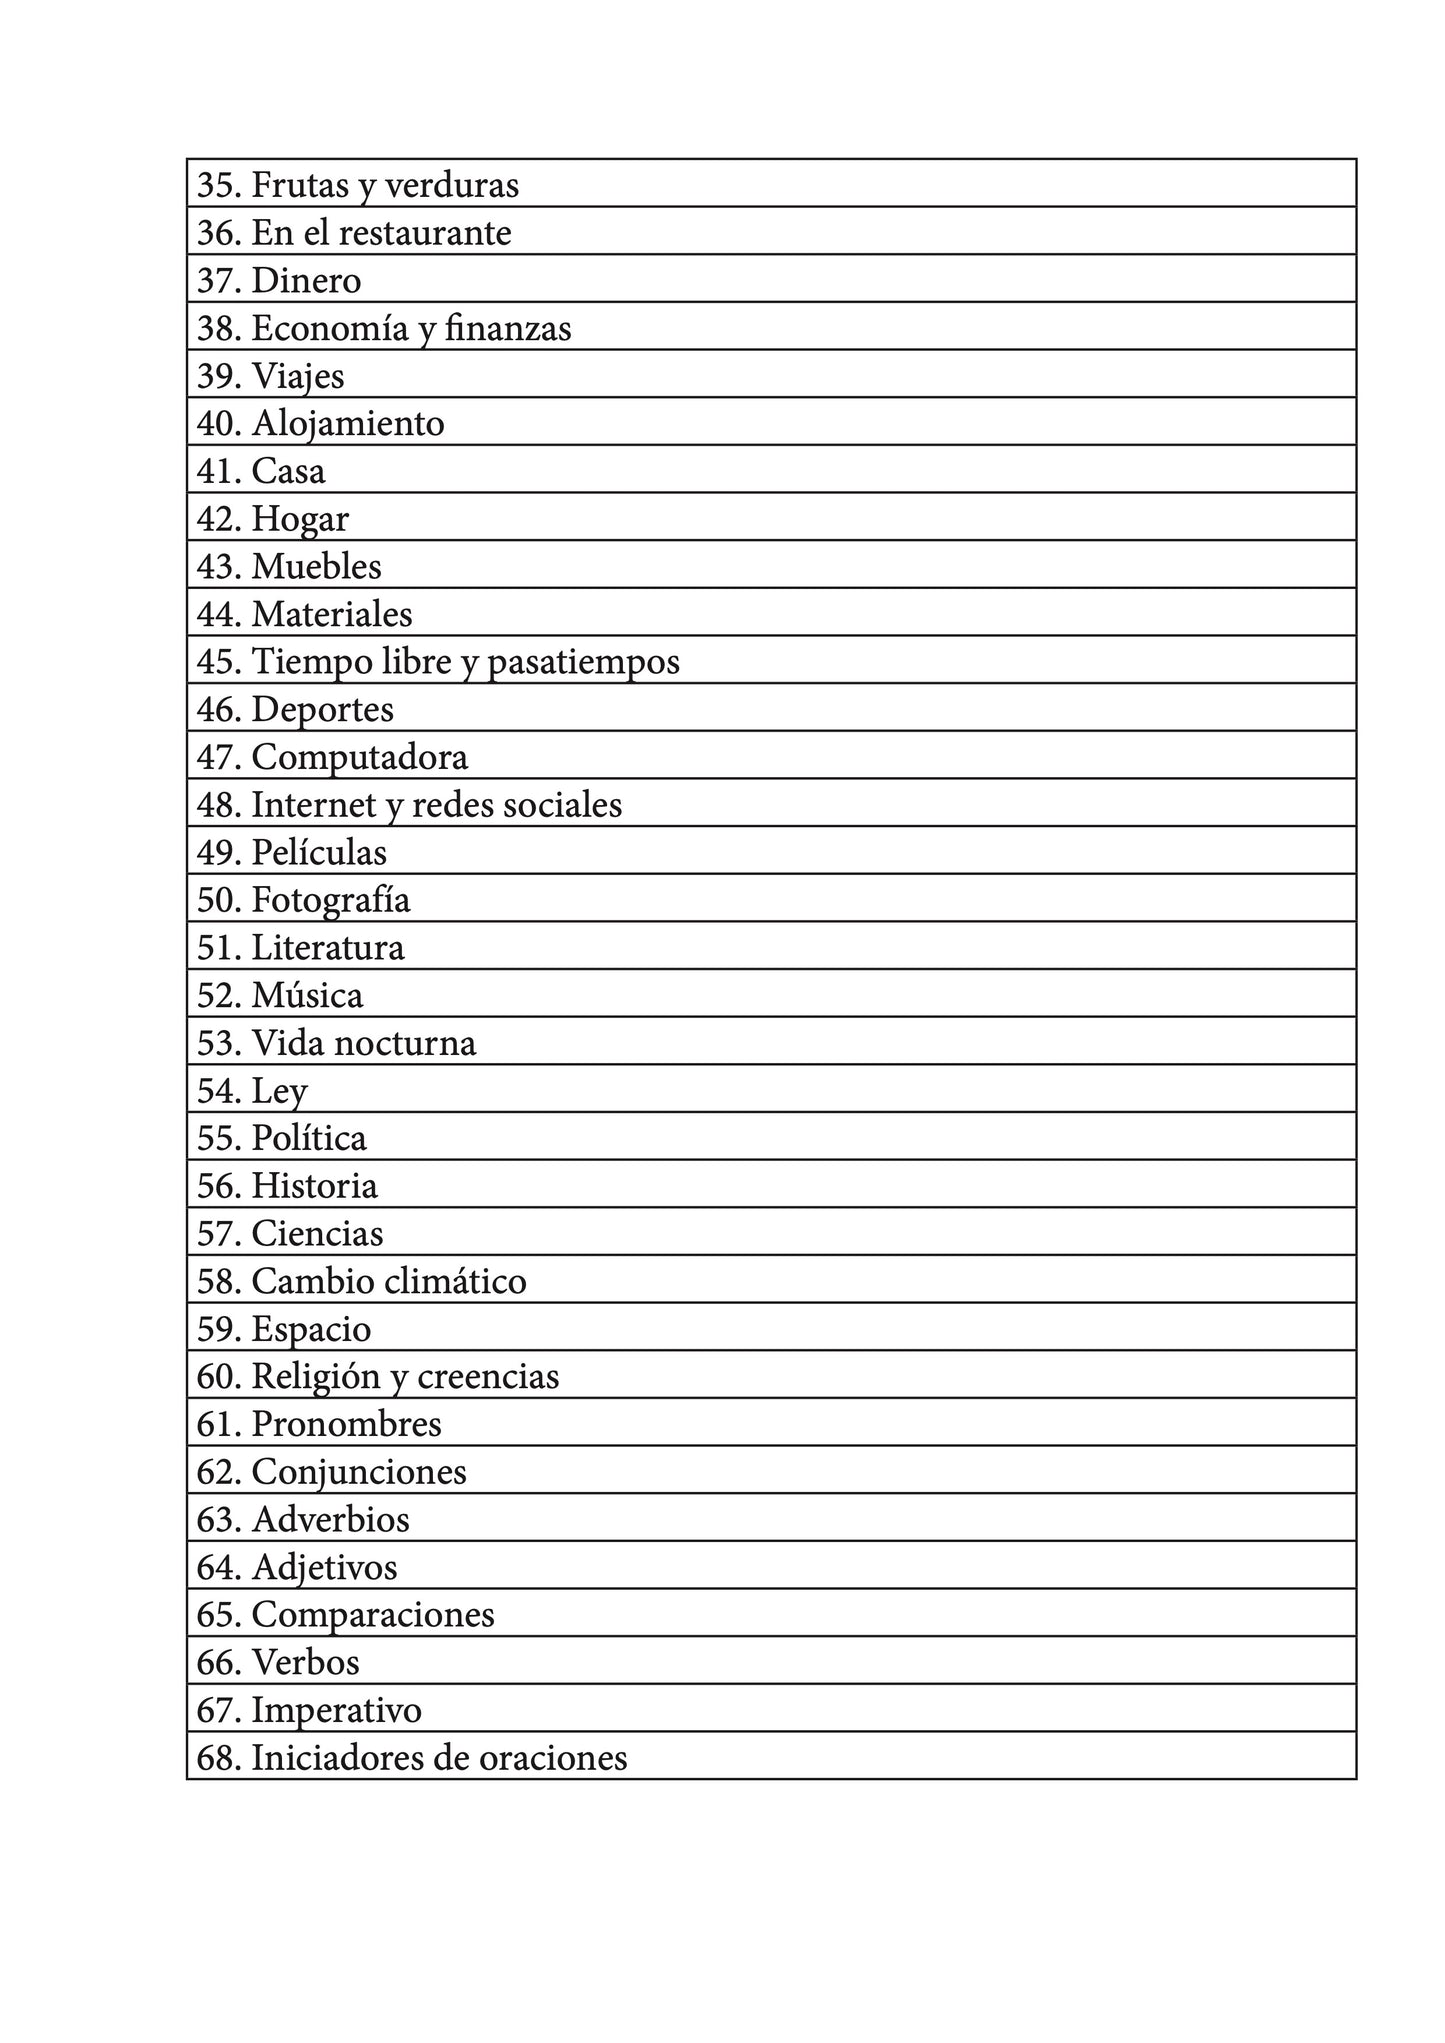 Español-italiano cuaderno de vocabulario